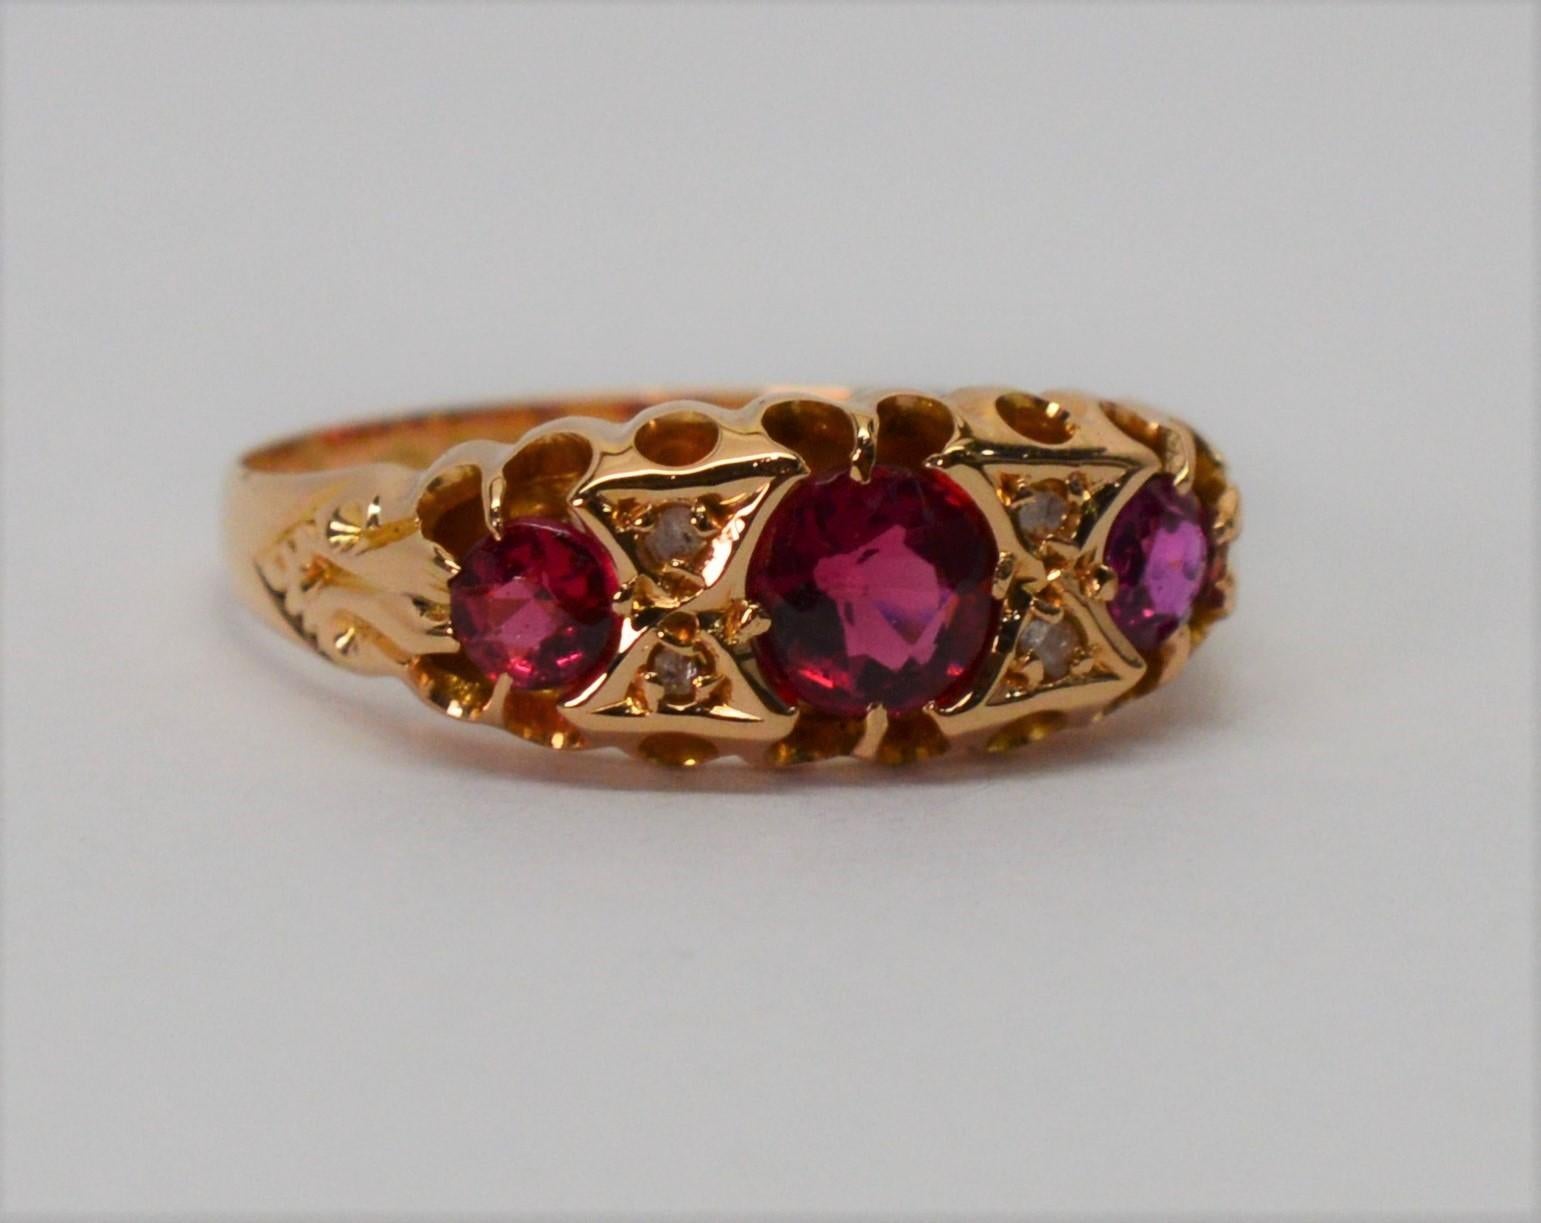 Drei leuchtende Rubine im Rosenschliff sind das Merkmal dieses feinen Rings aus 18-karätigem Gelbgold aus der Edwardianischen Zeit. Es ist schön antiken Fassung umfasst vier .01 Karat Diamanten Akzente, die weitere Ergänzung der bunten Hand